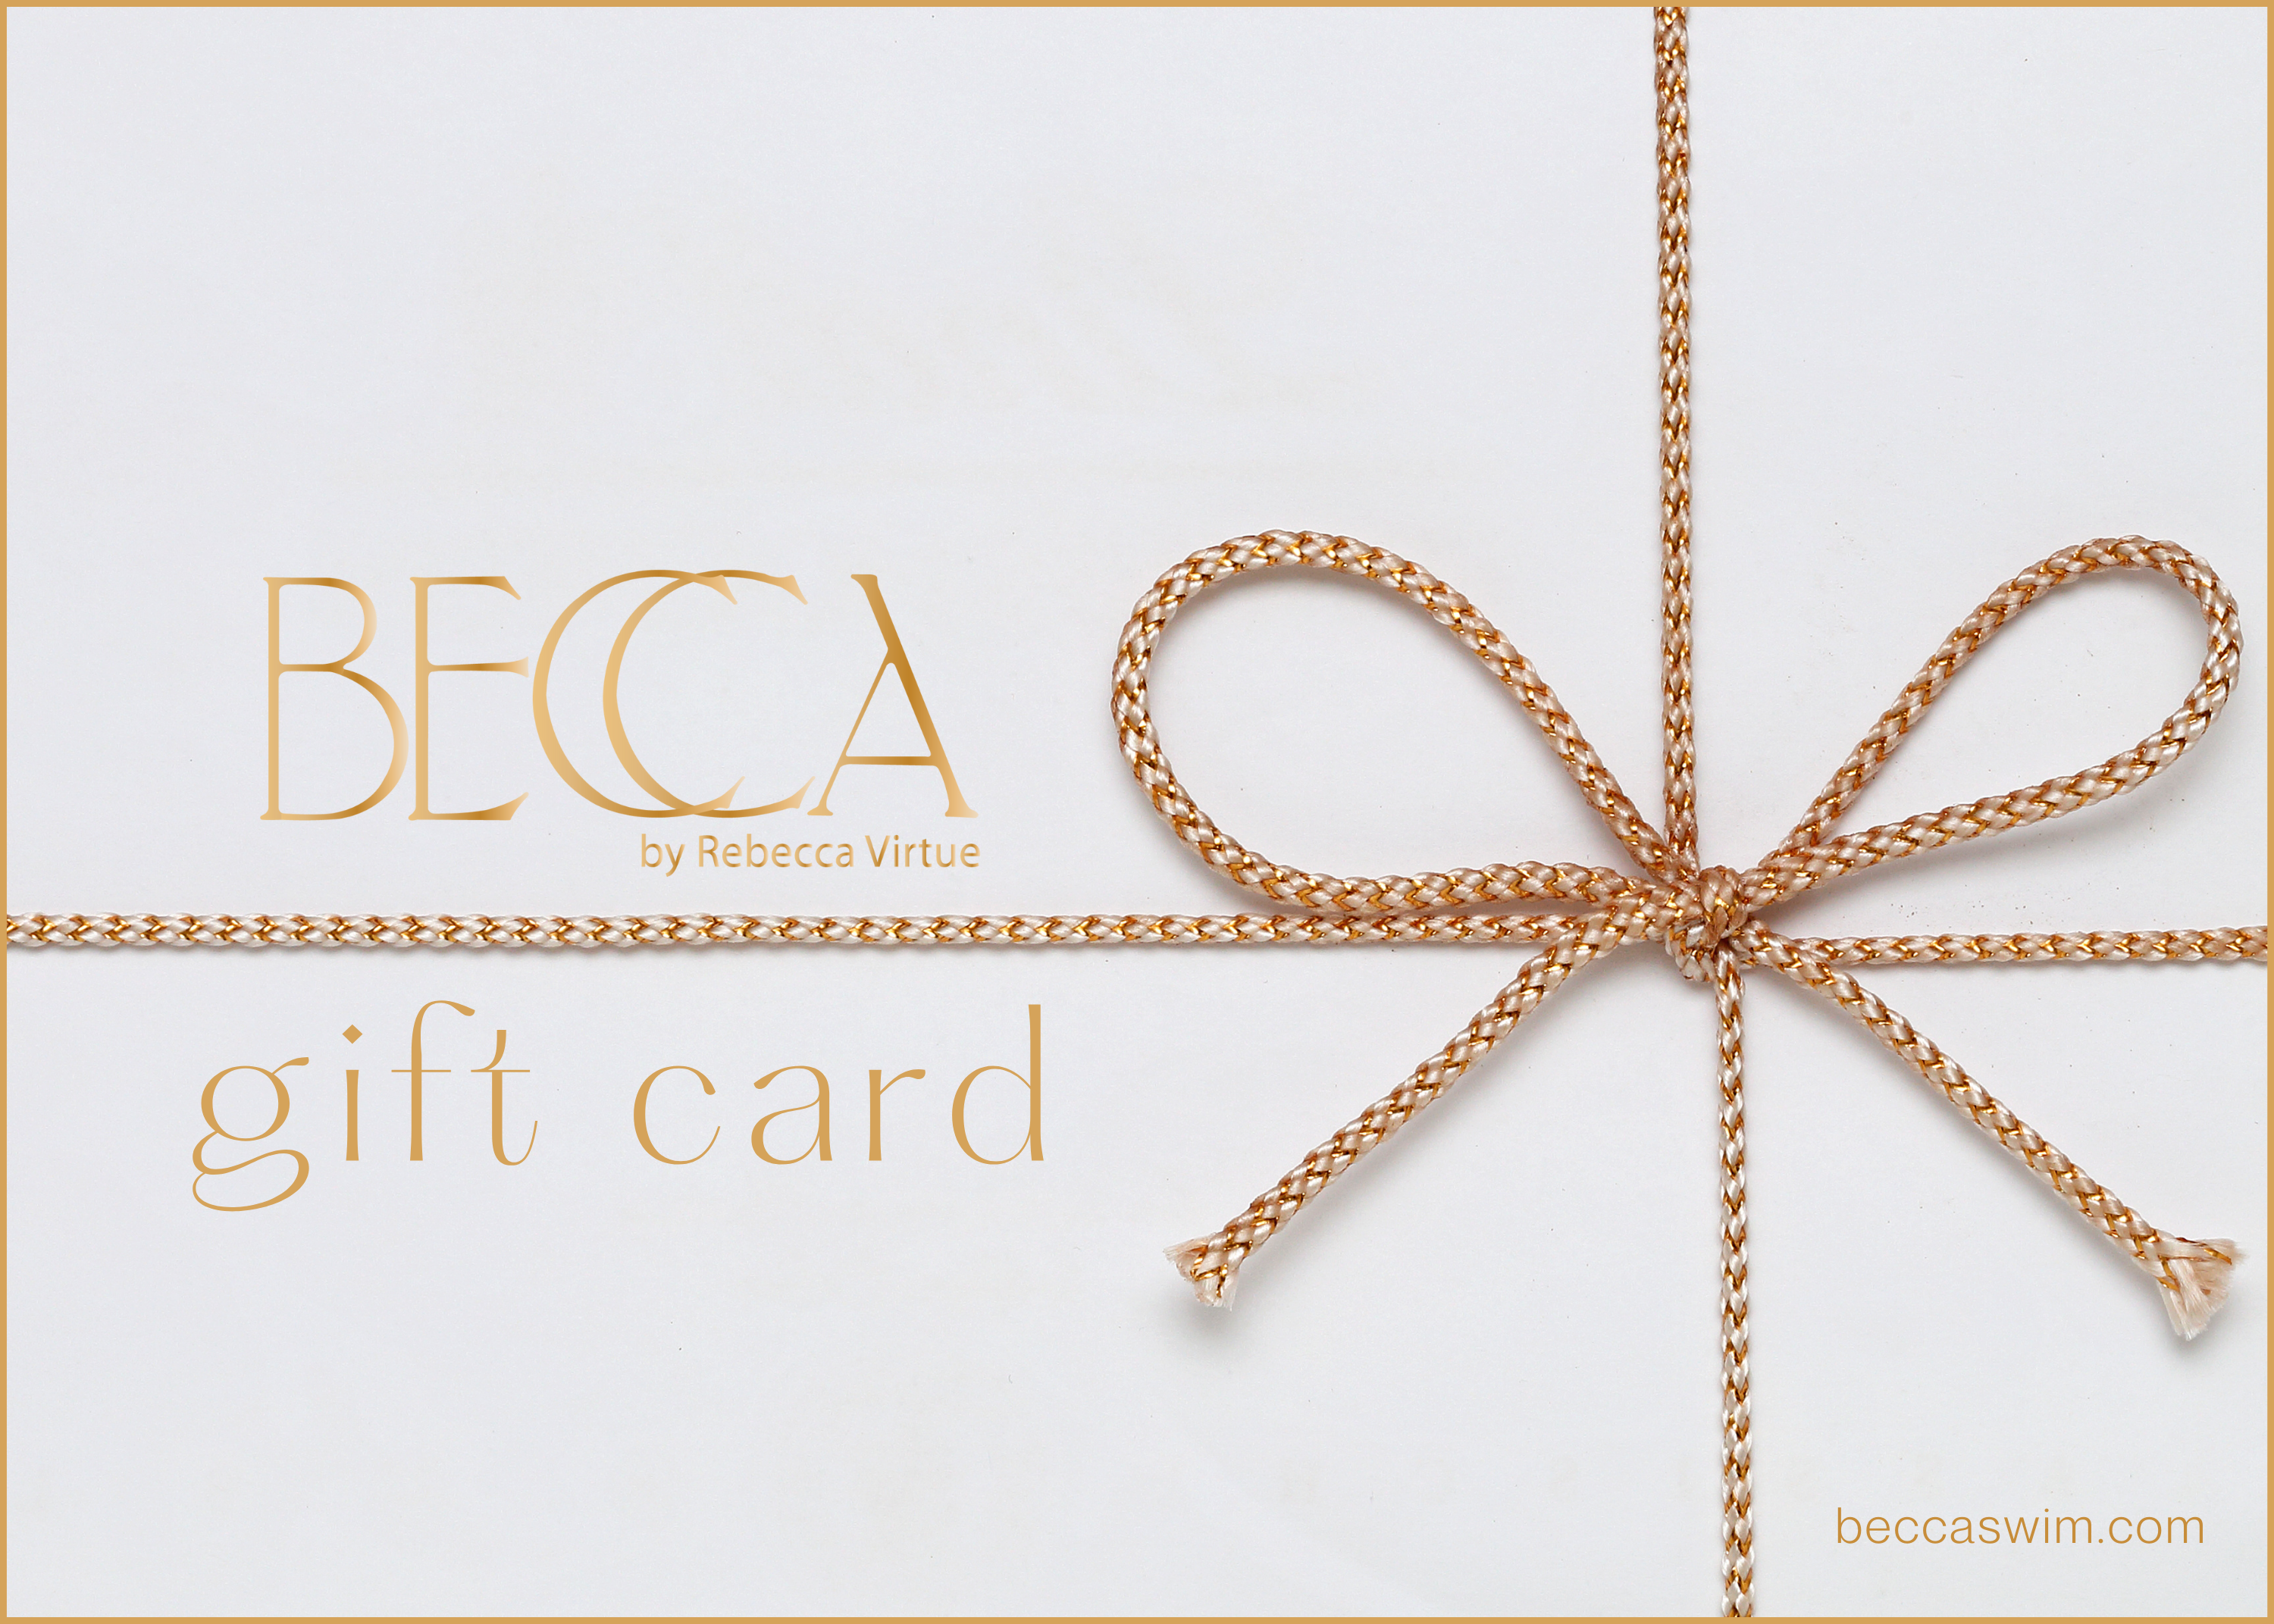 GIFT CARD - BECCA by Rebecca Virtue